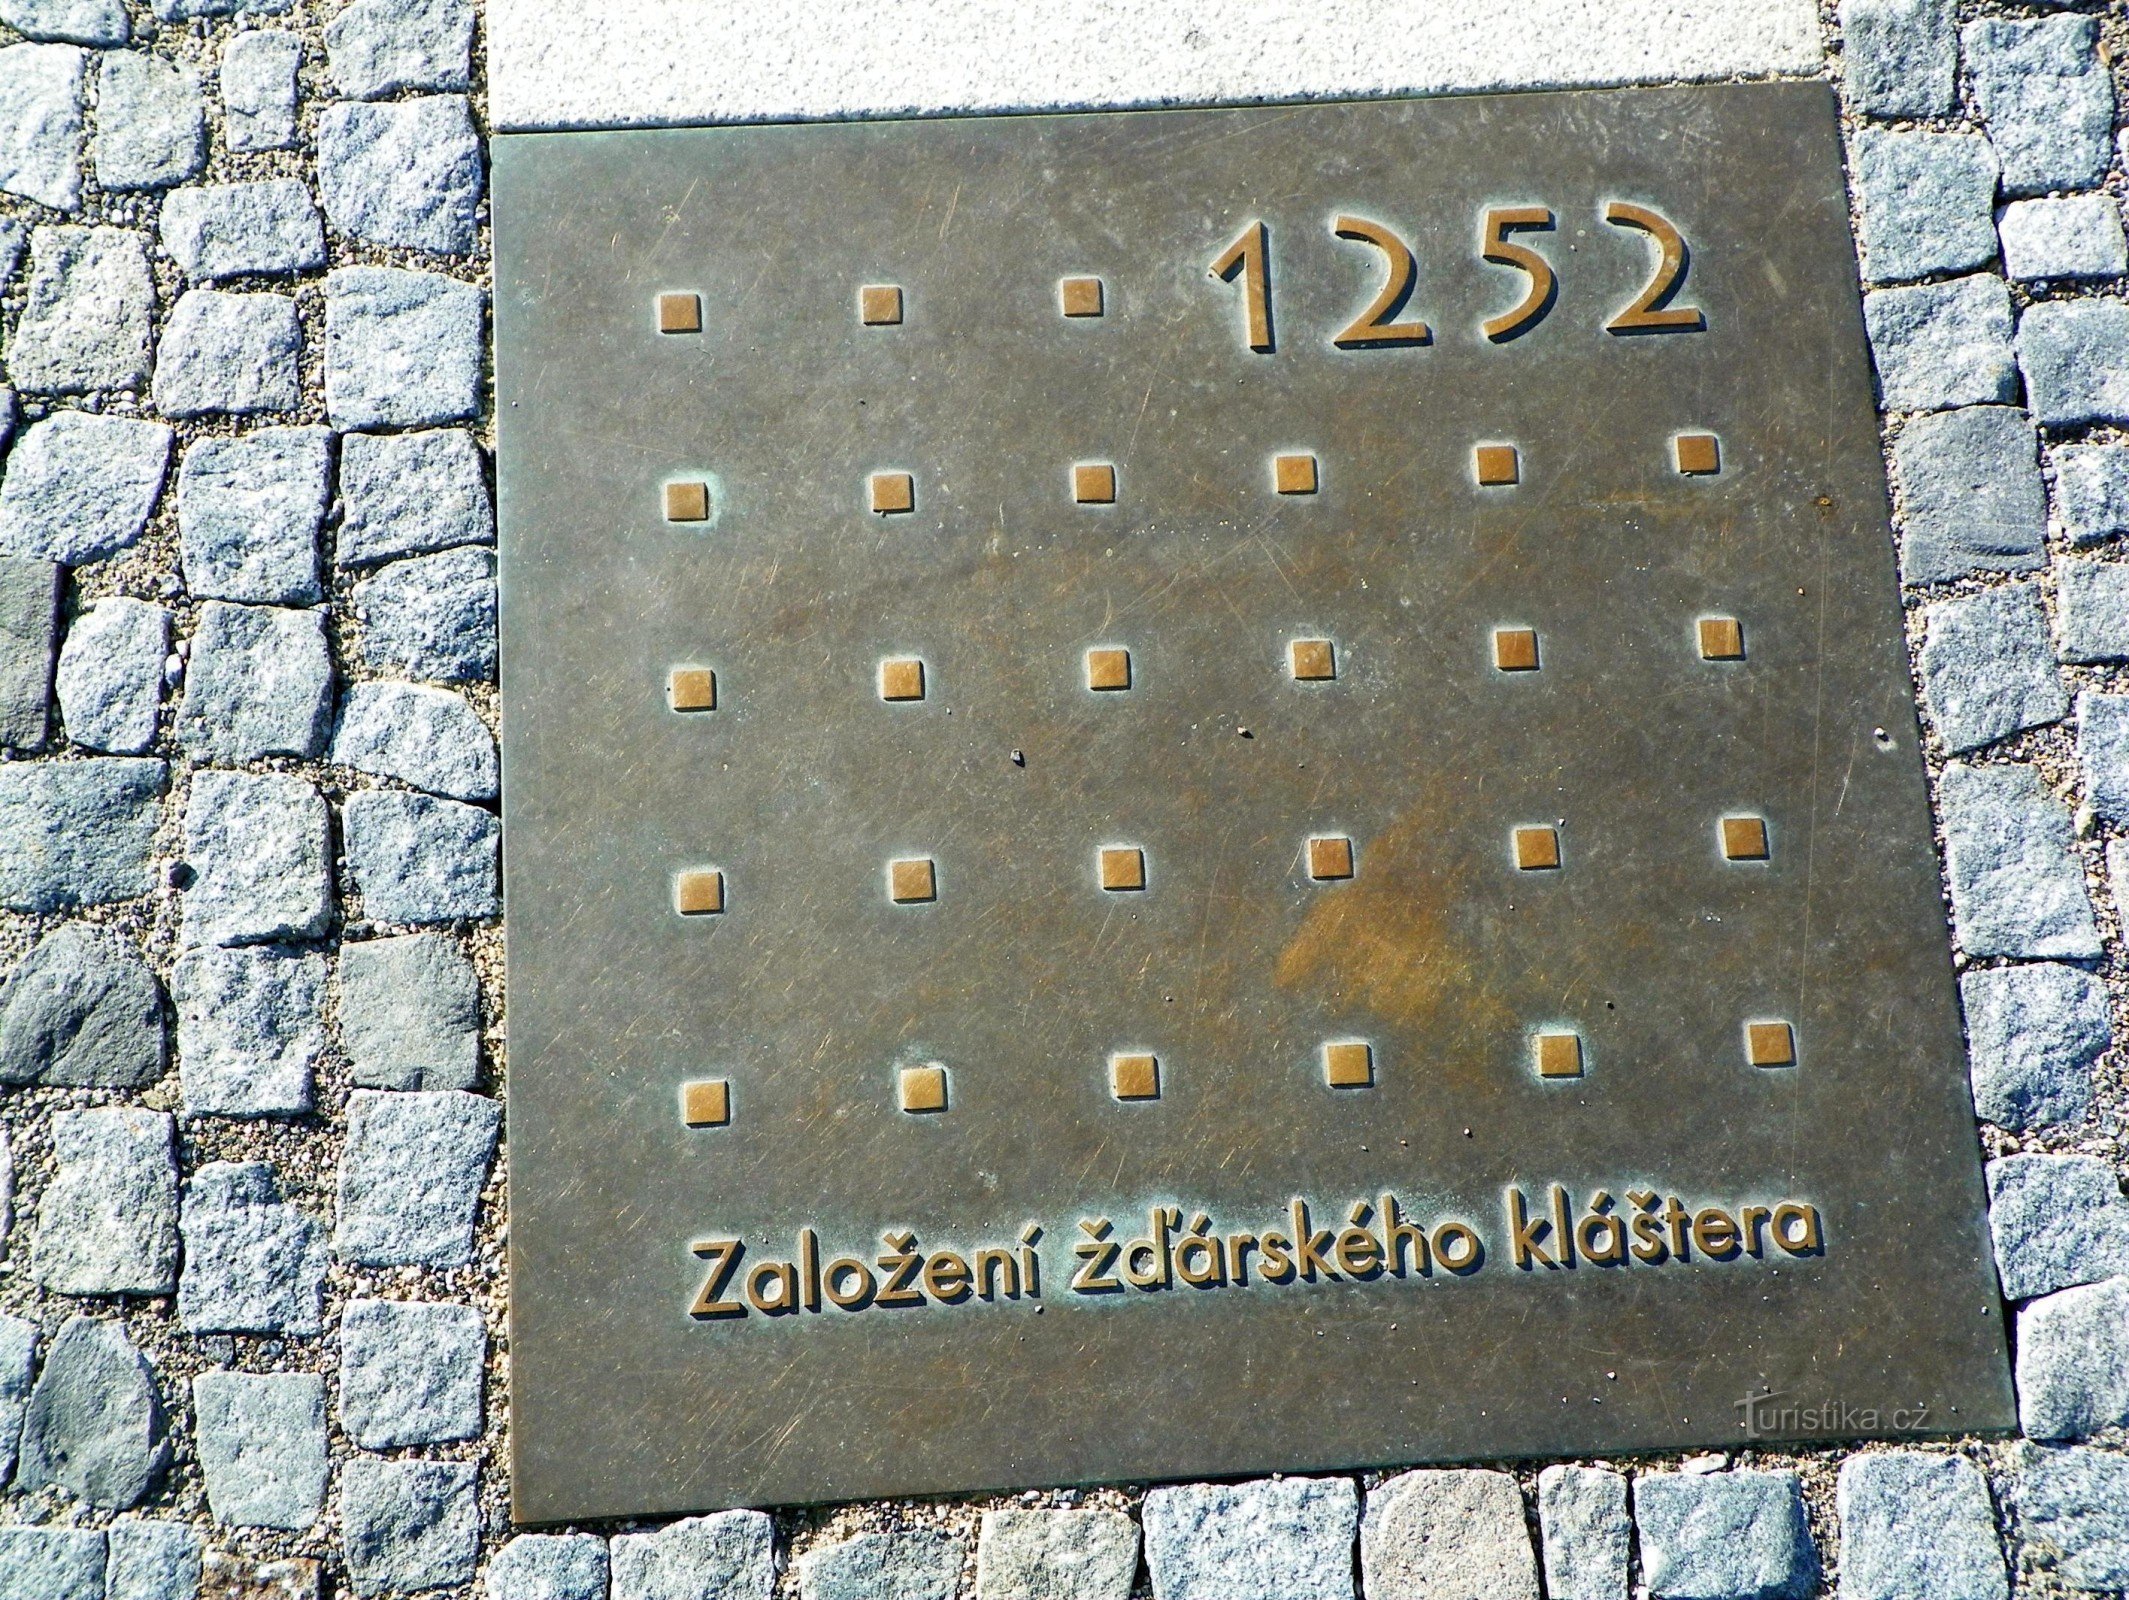 Um marco na linha do tempo de Žďár